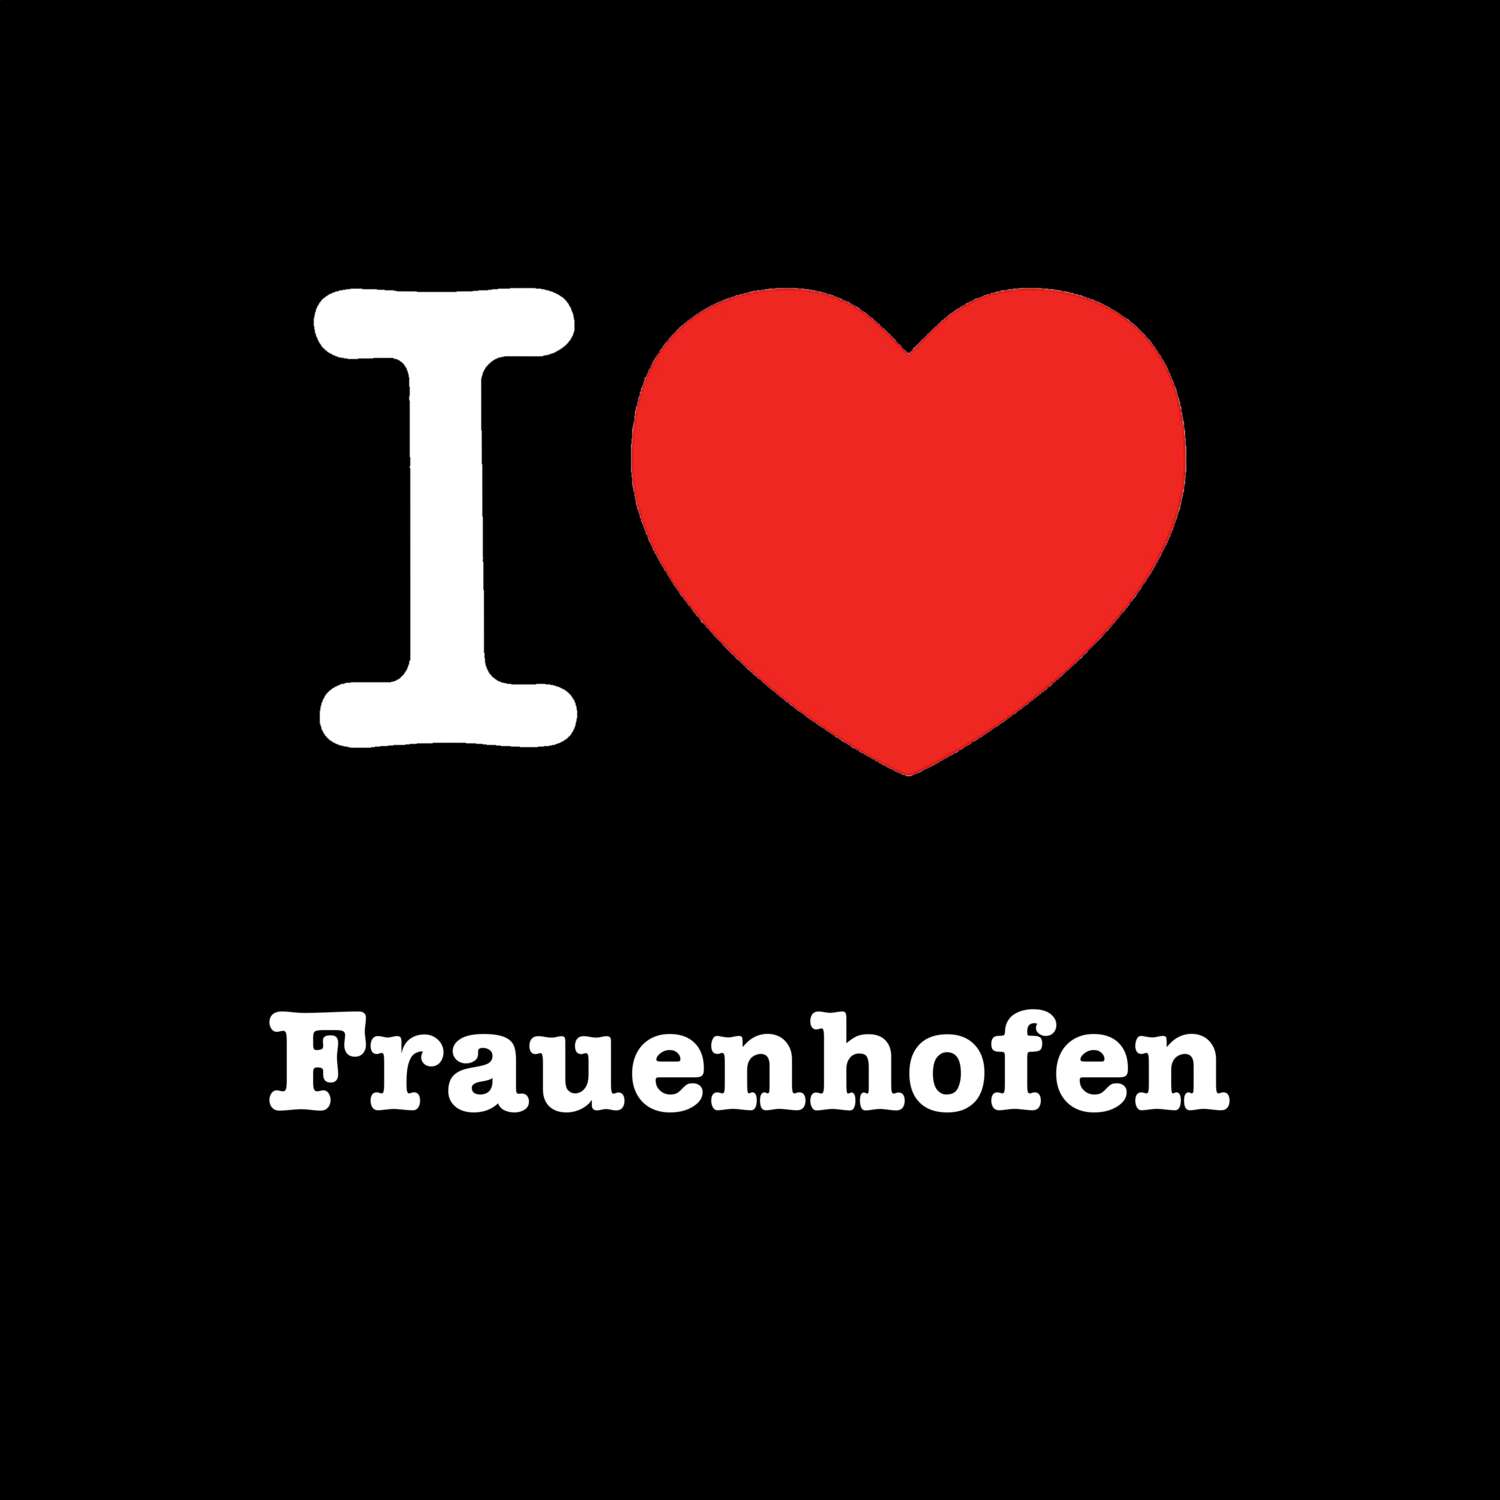 Frauenhofen T-Shirt »I love«